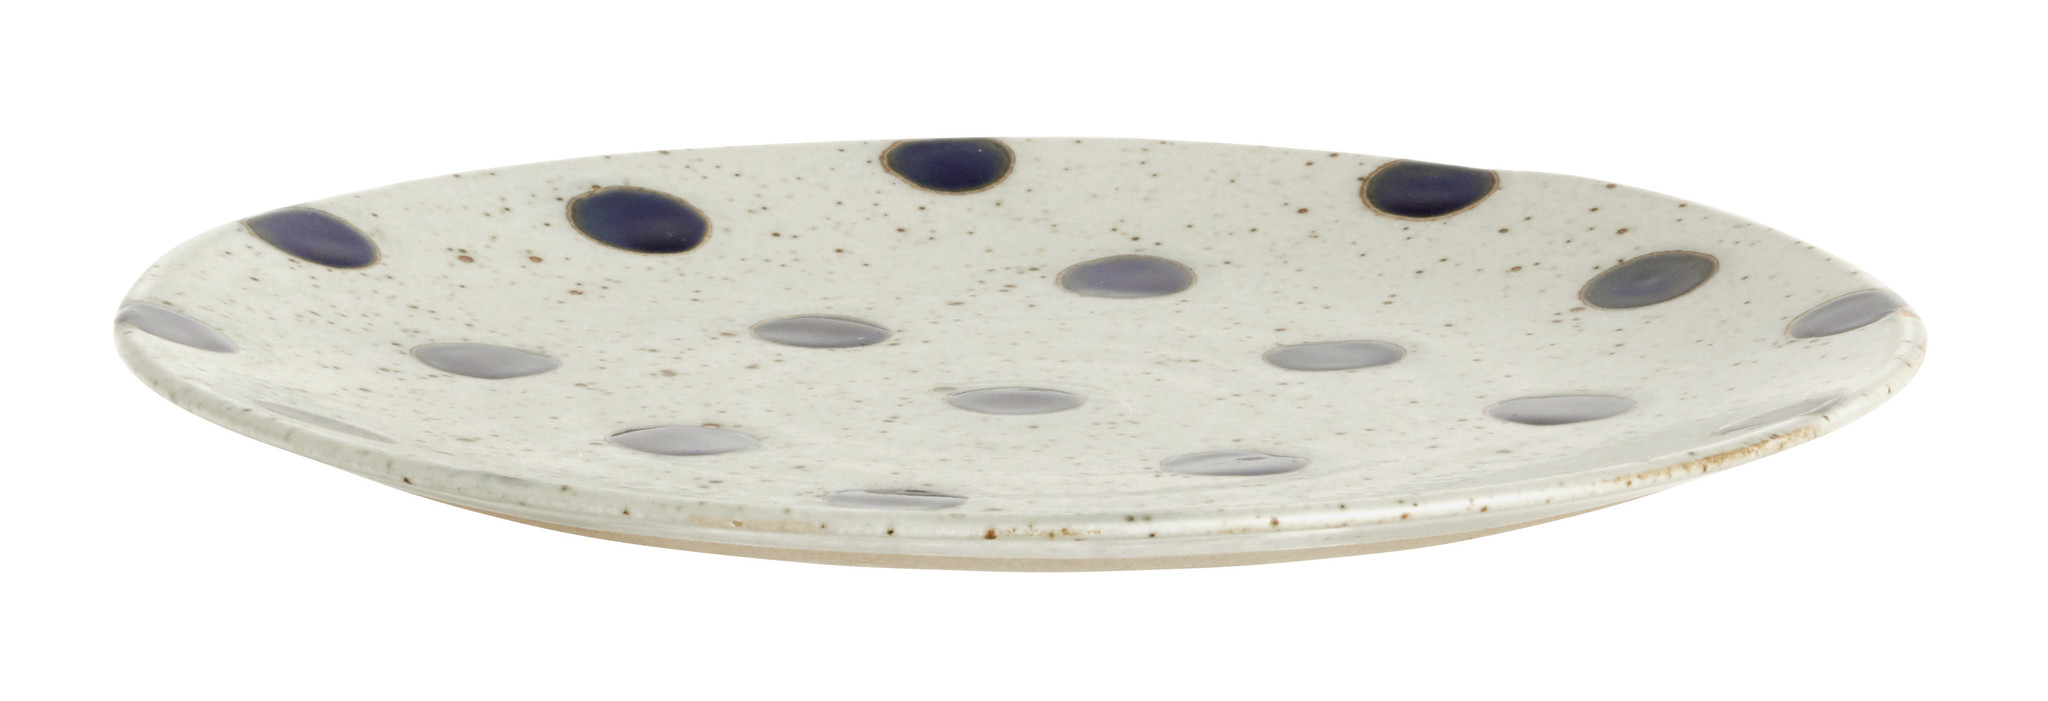 Nordal Grainy bord ø 21 cm - zand/donkerblauw - set van 4-57008-5708309157405